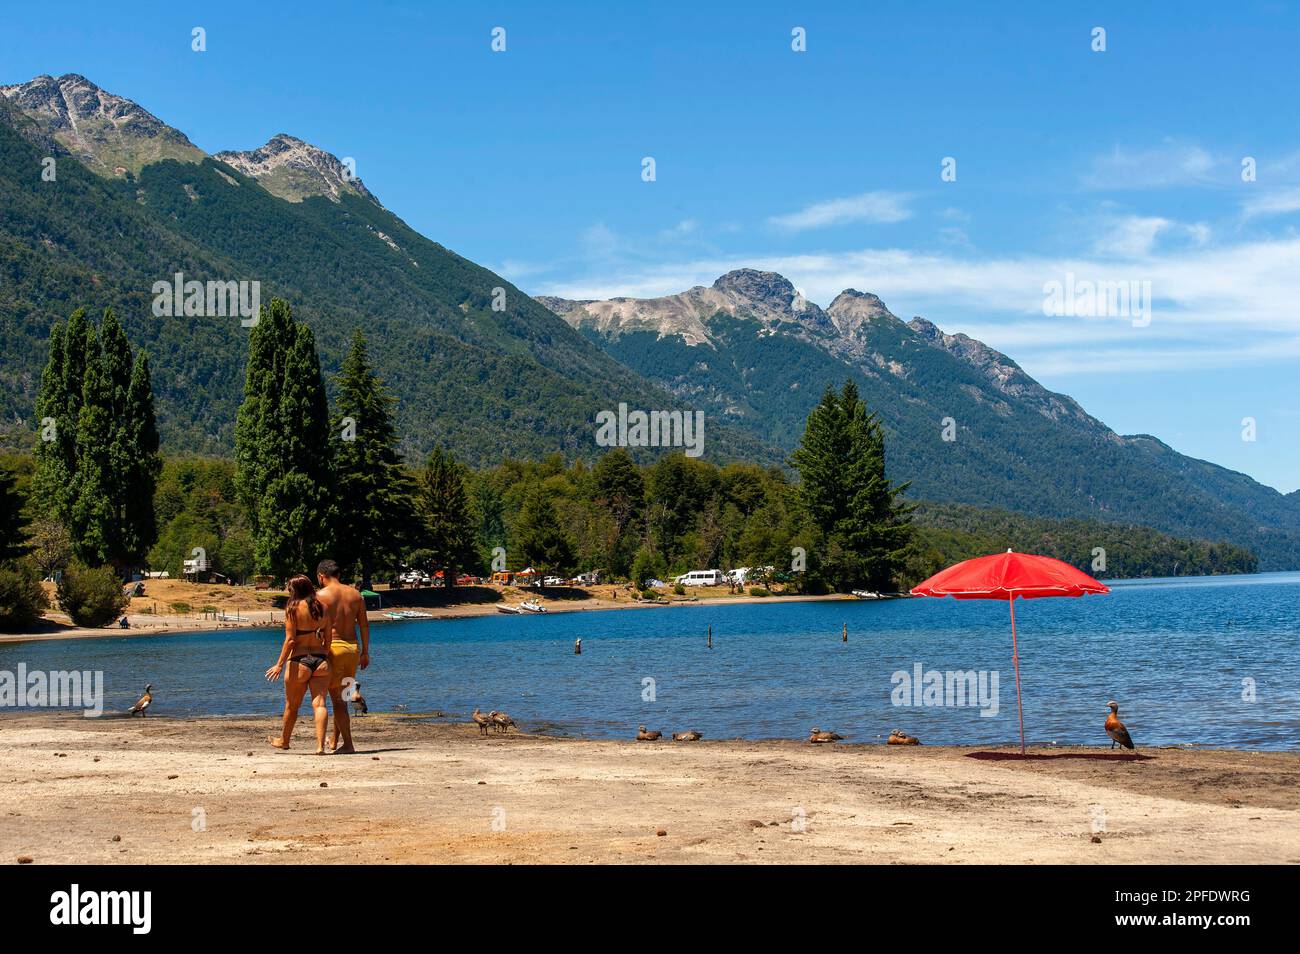 Turisti che praticano attività sportive sul lago Correntoso, Neuquén, Argentina Foto Stock